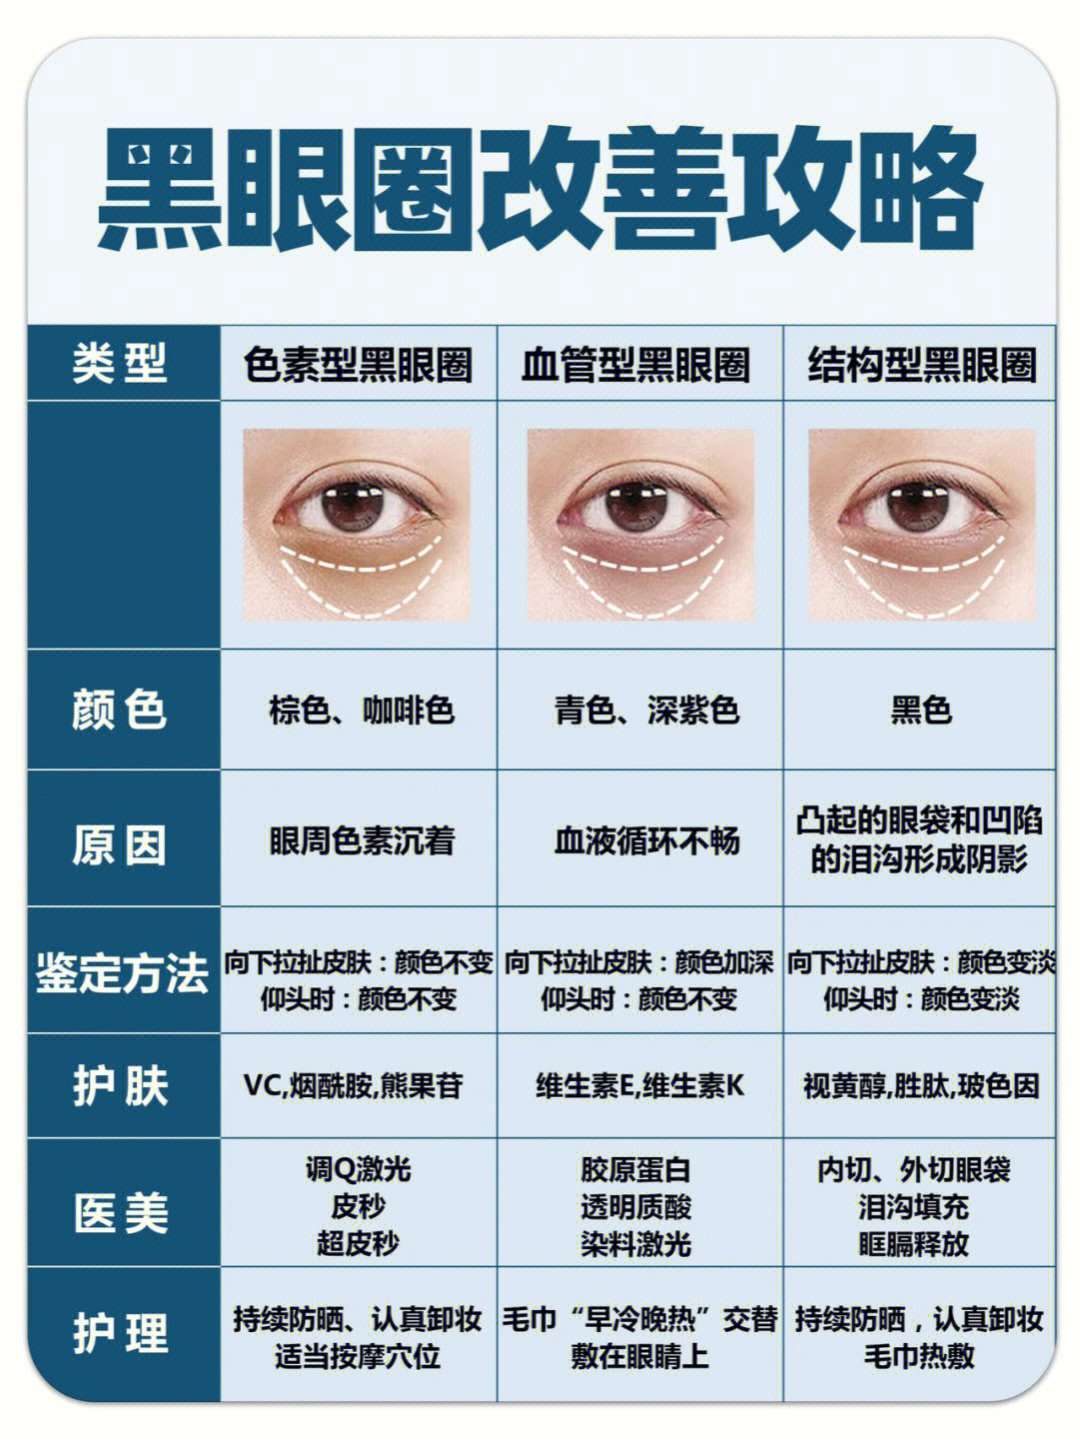 98黑眼圈分类及改善攻略眼周抗衰之黑眼圈篇 :黑眼圈分为四种类型:1